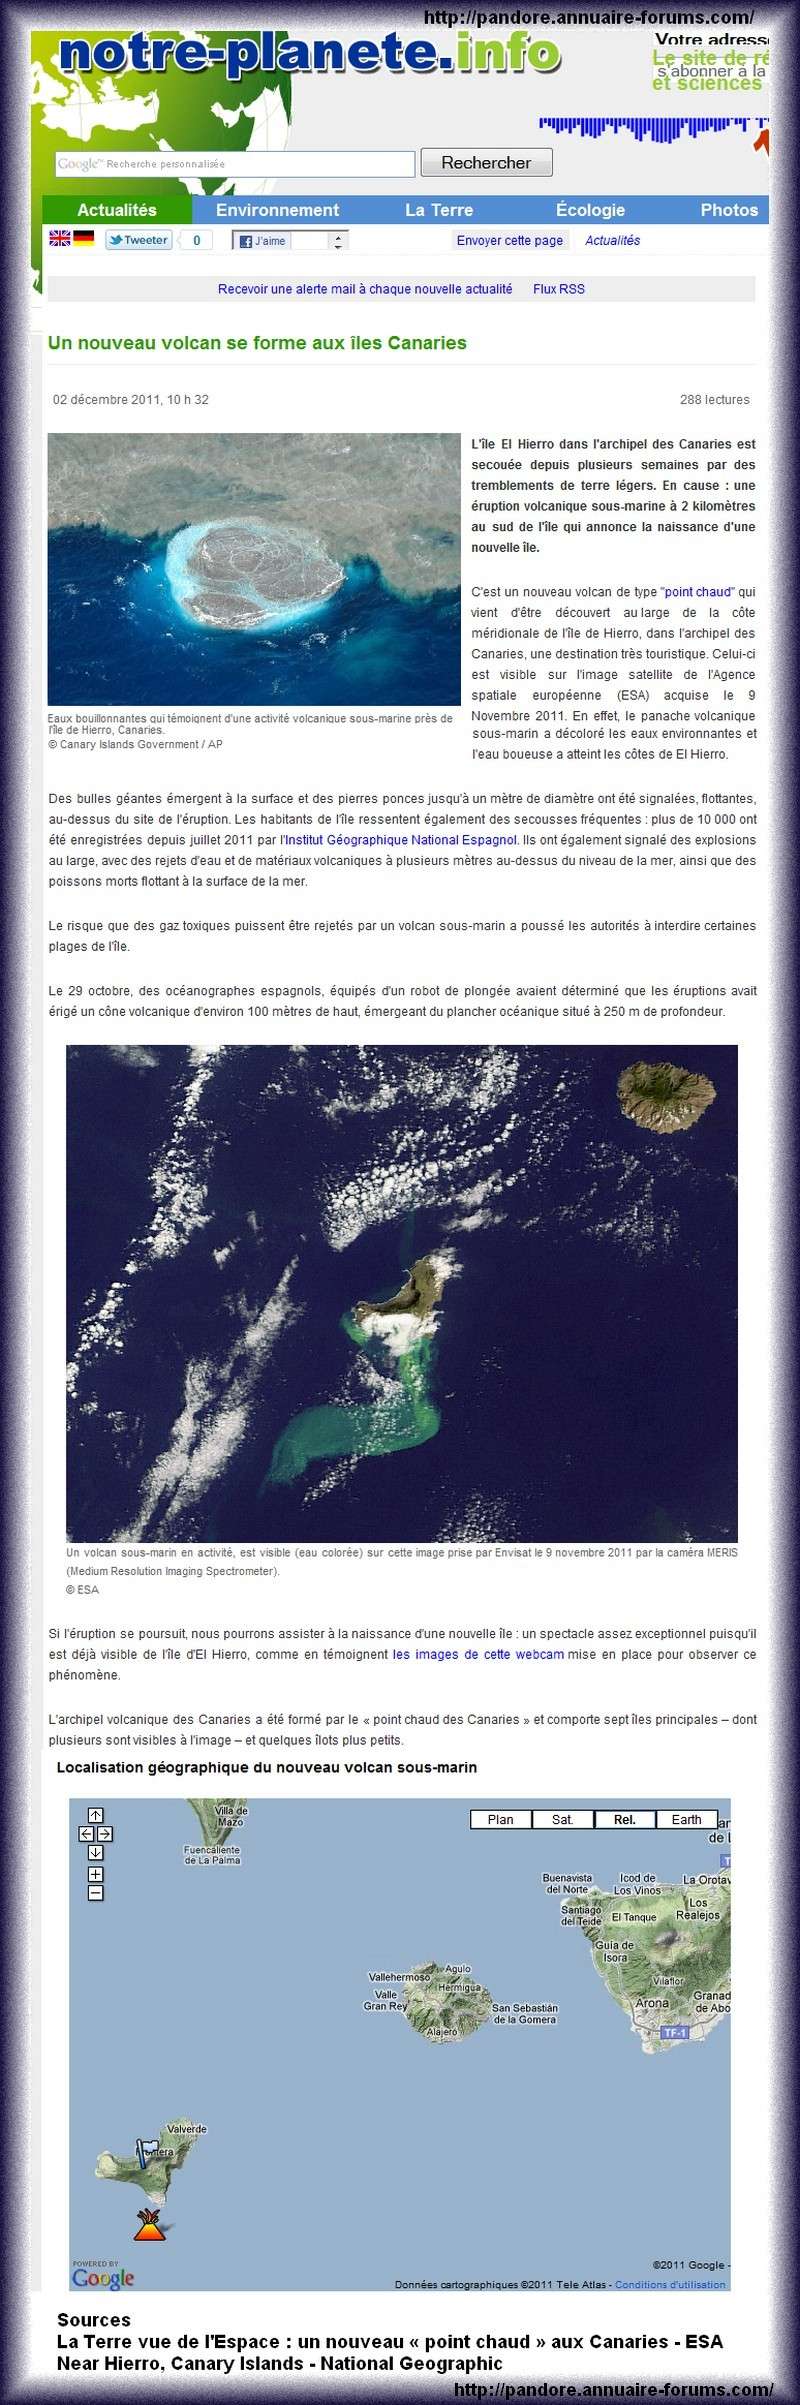 L'île El Hierro dans l'archipel des Canaries : une éruption volcanique sous-marine à 2 kilomètres annonce la naissance d'une nouvelle île. 04450